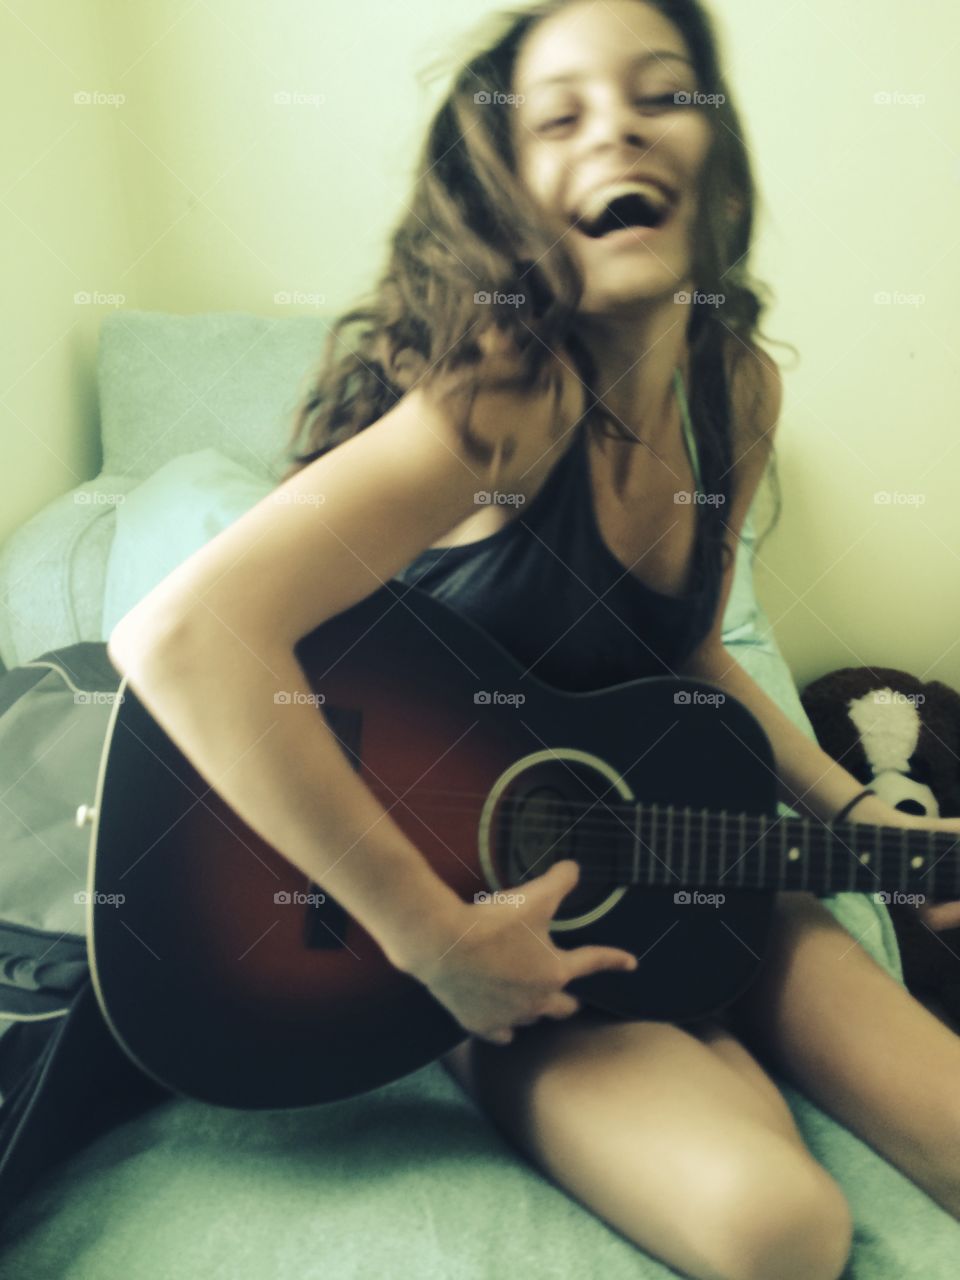 Smiling woman playing guitar